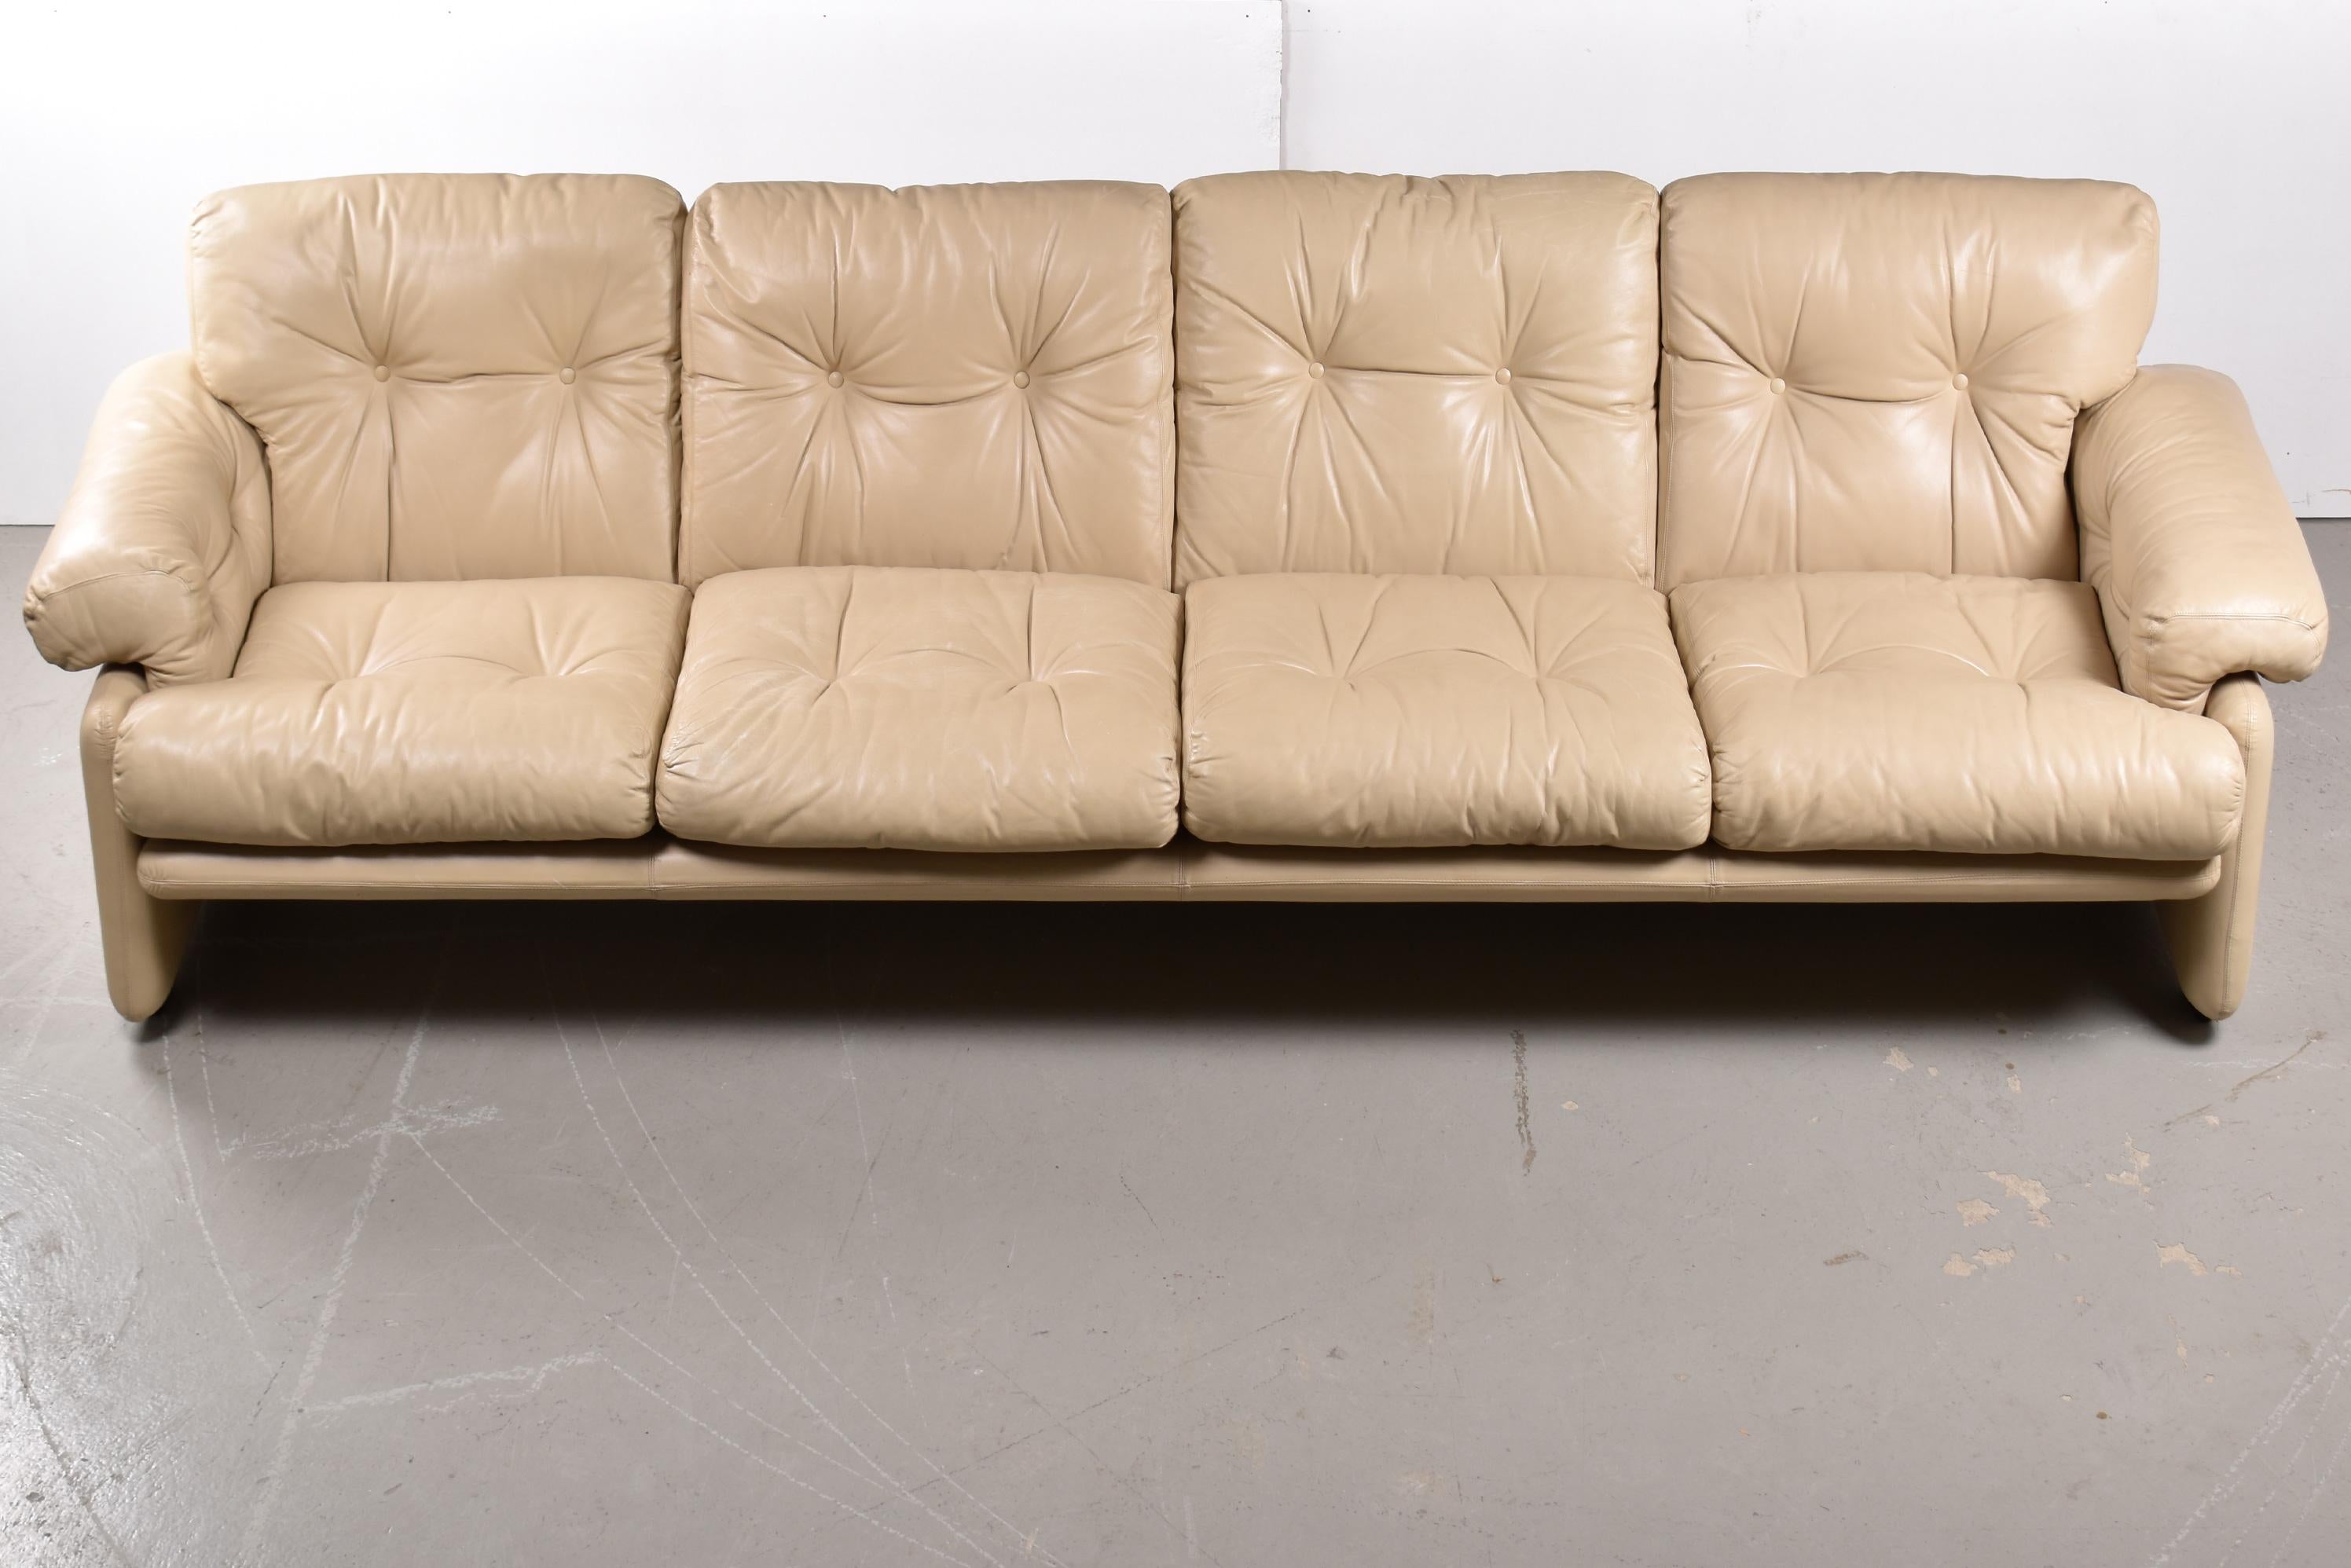 Schönes Viersitzer-Sofa aus elfenbeinfarbenem Leder, entworfen von Tobia und Afra Scarpa.
Dieses sehr bequeme Sofa mit seinen tiefen, flauschigen Kissen und dem hochwertigen Leder ist das Flaggschiff der 